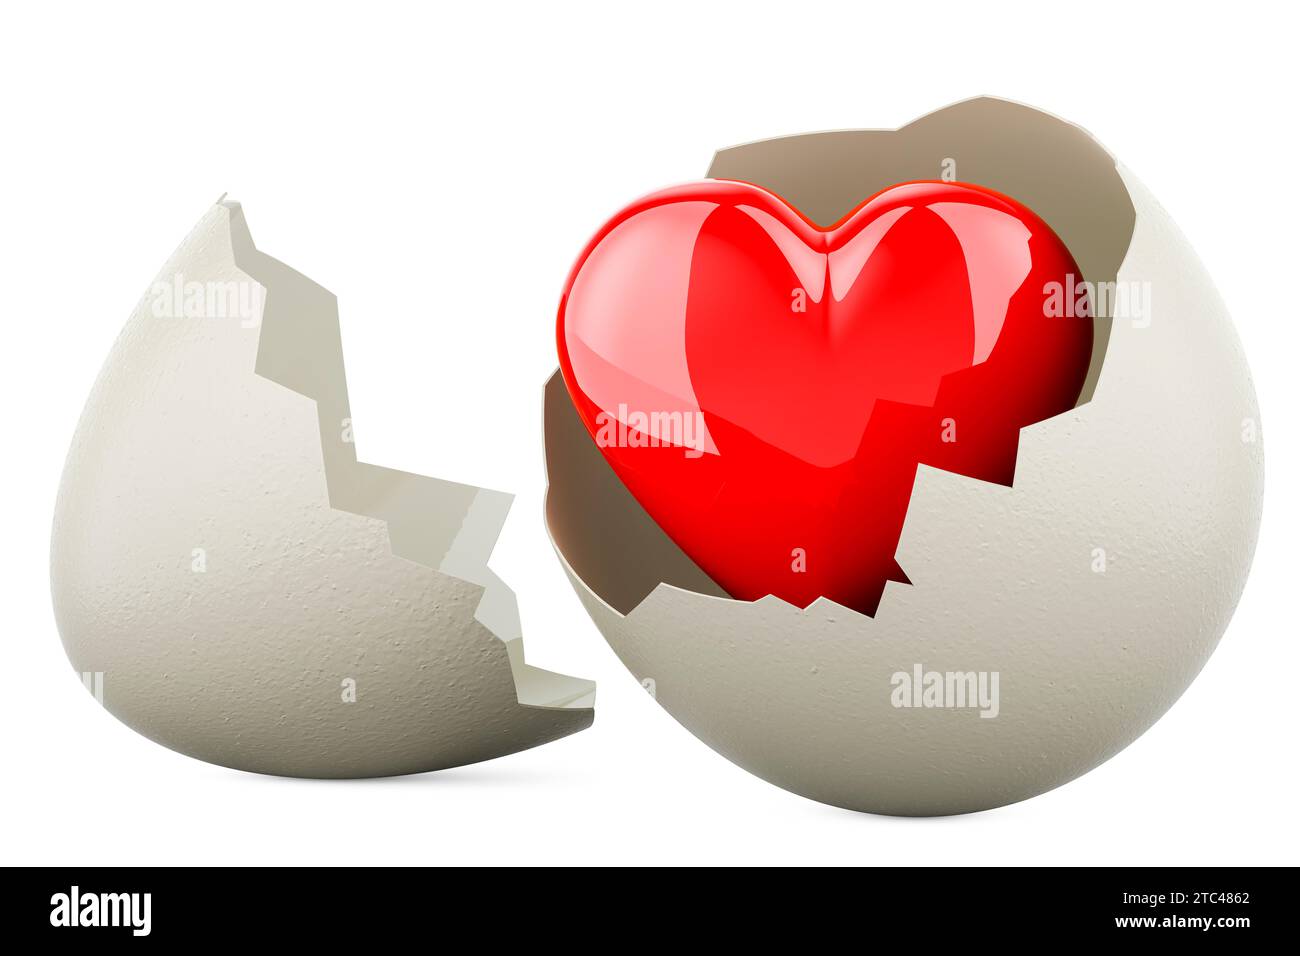 Rotes Herz in gebrochenem Hühnerei, 3D-Rendering isoliert auf weißem Hintergrund Stockfoto